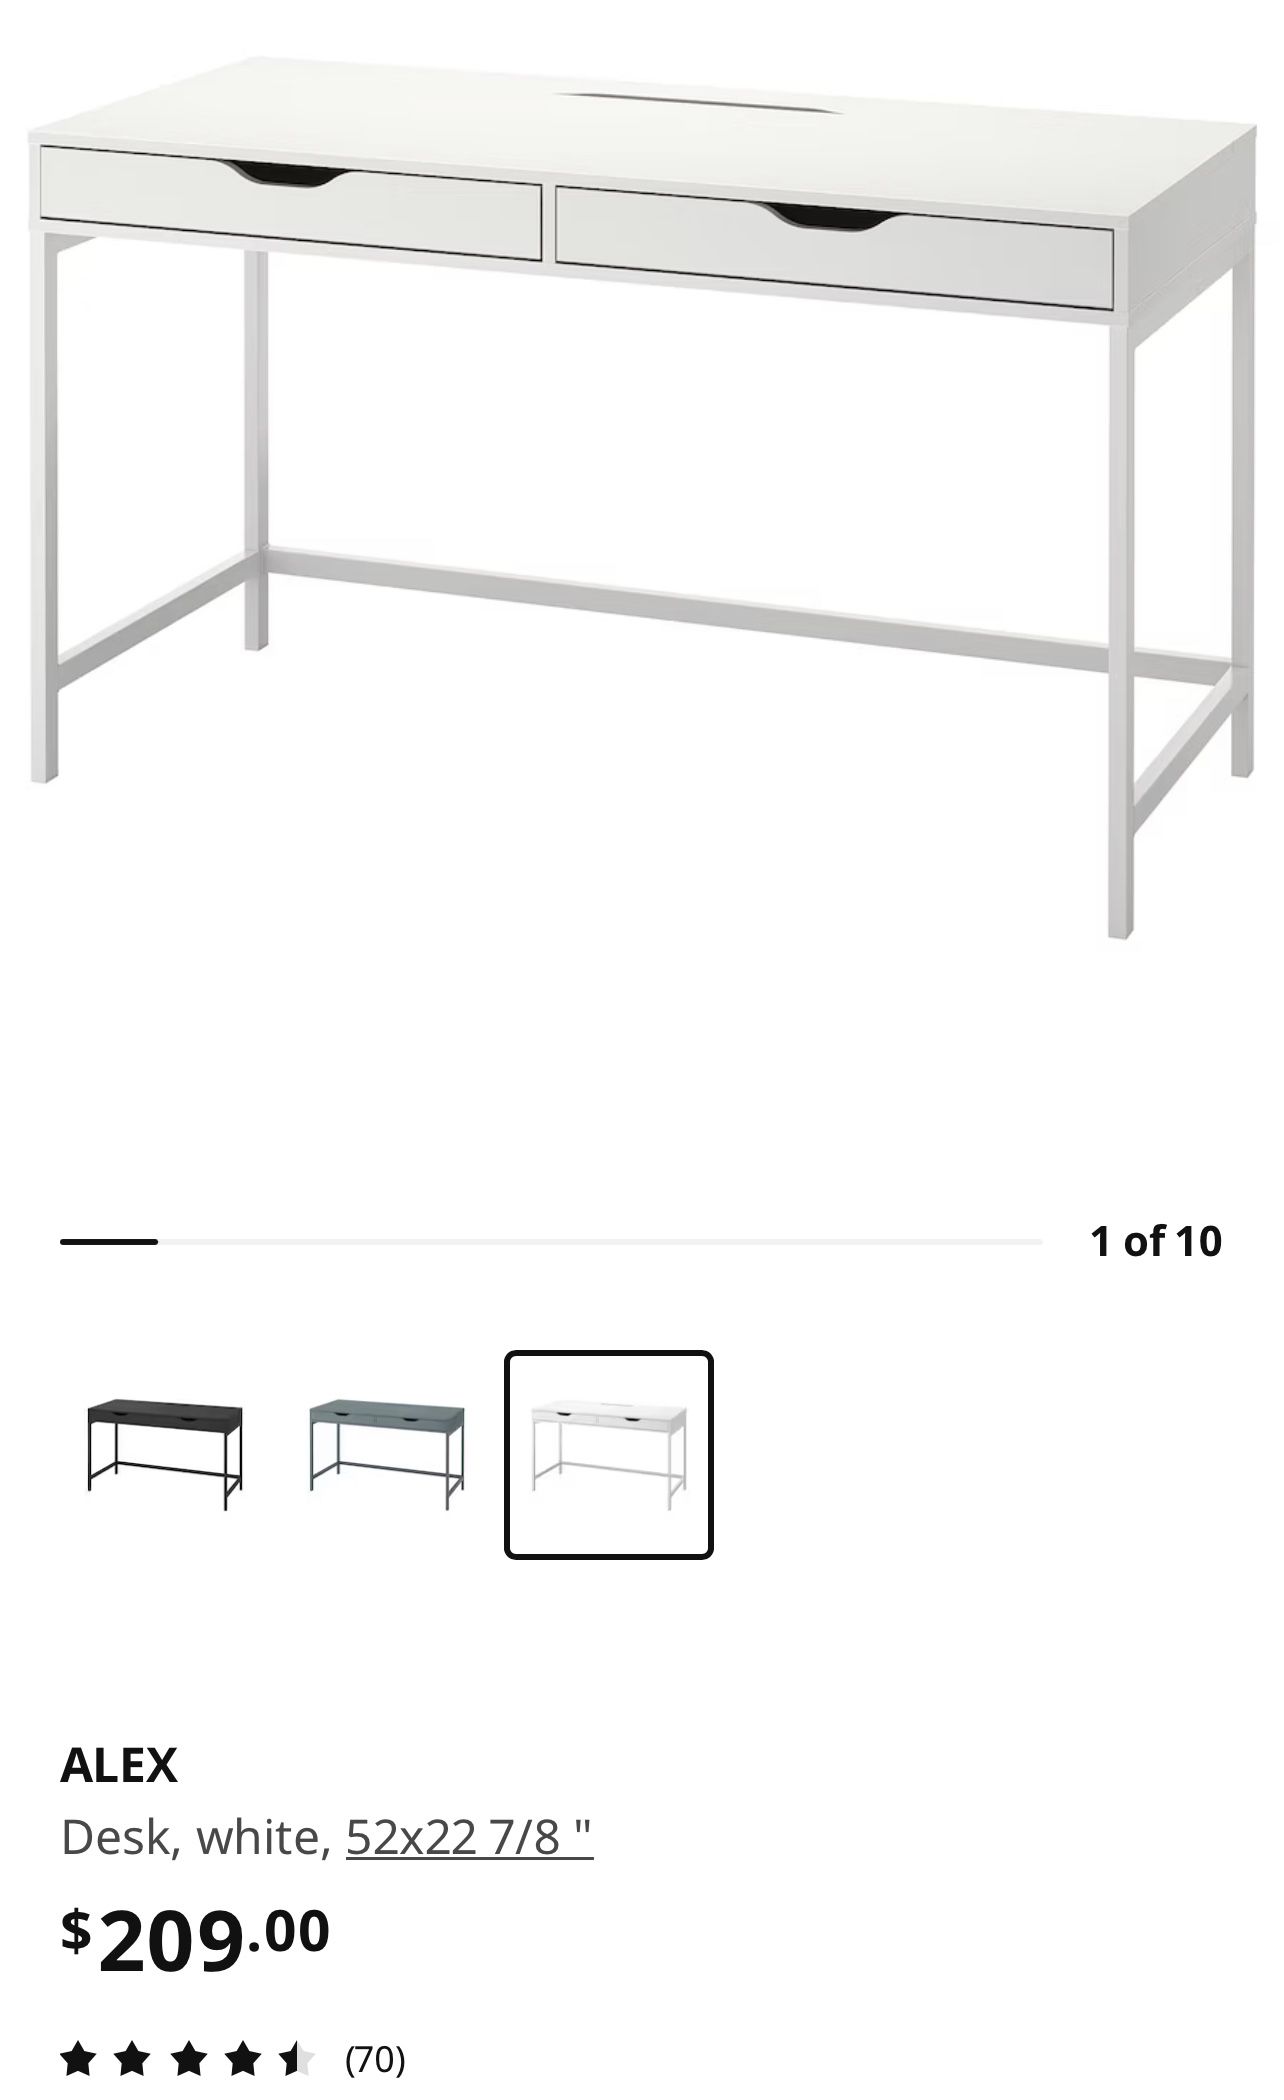 IKEA White Desk (Alex)  